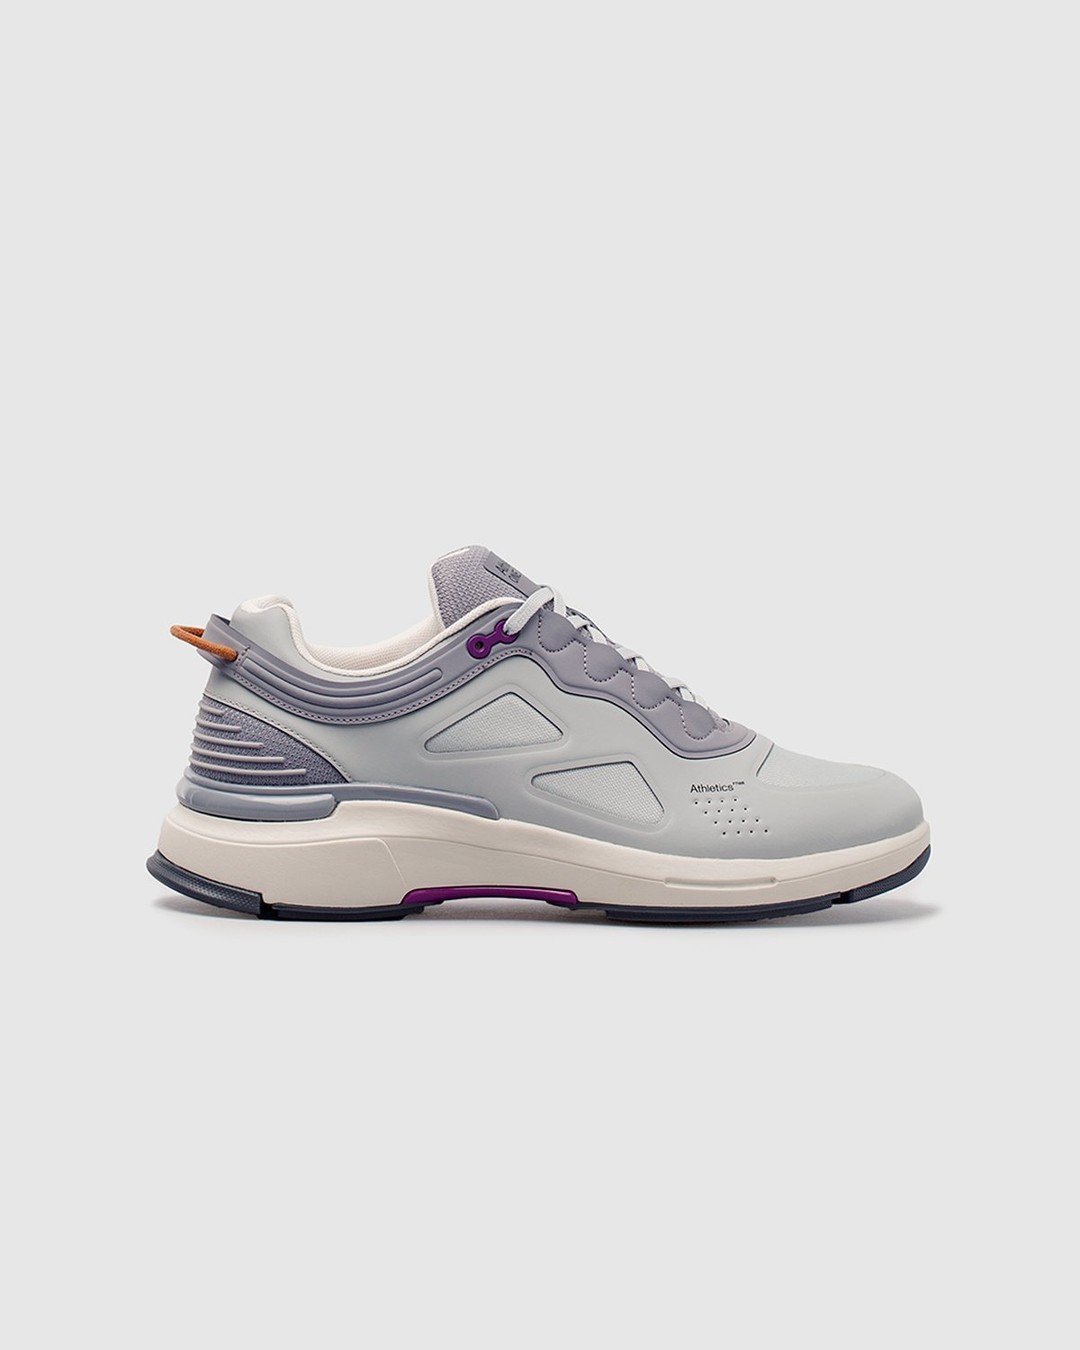 Athletics Footwear – ONE.2 Grey / Formal Grey / G3 Grape - Low Top Sneakers - Grey - Image 1